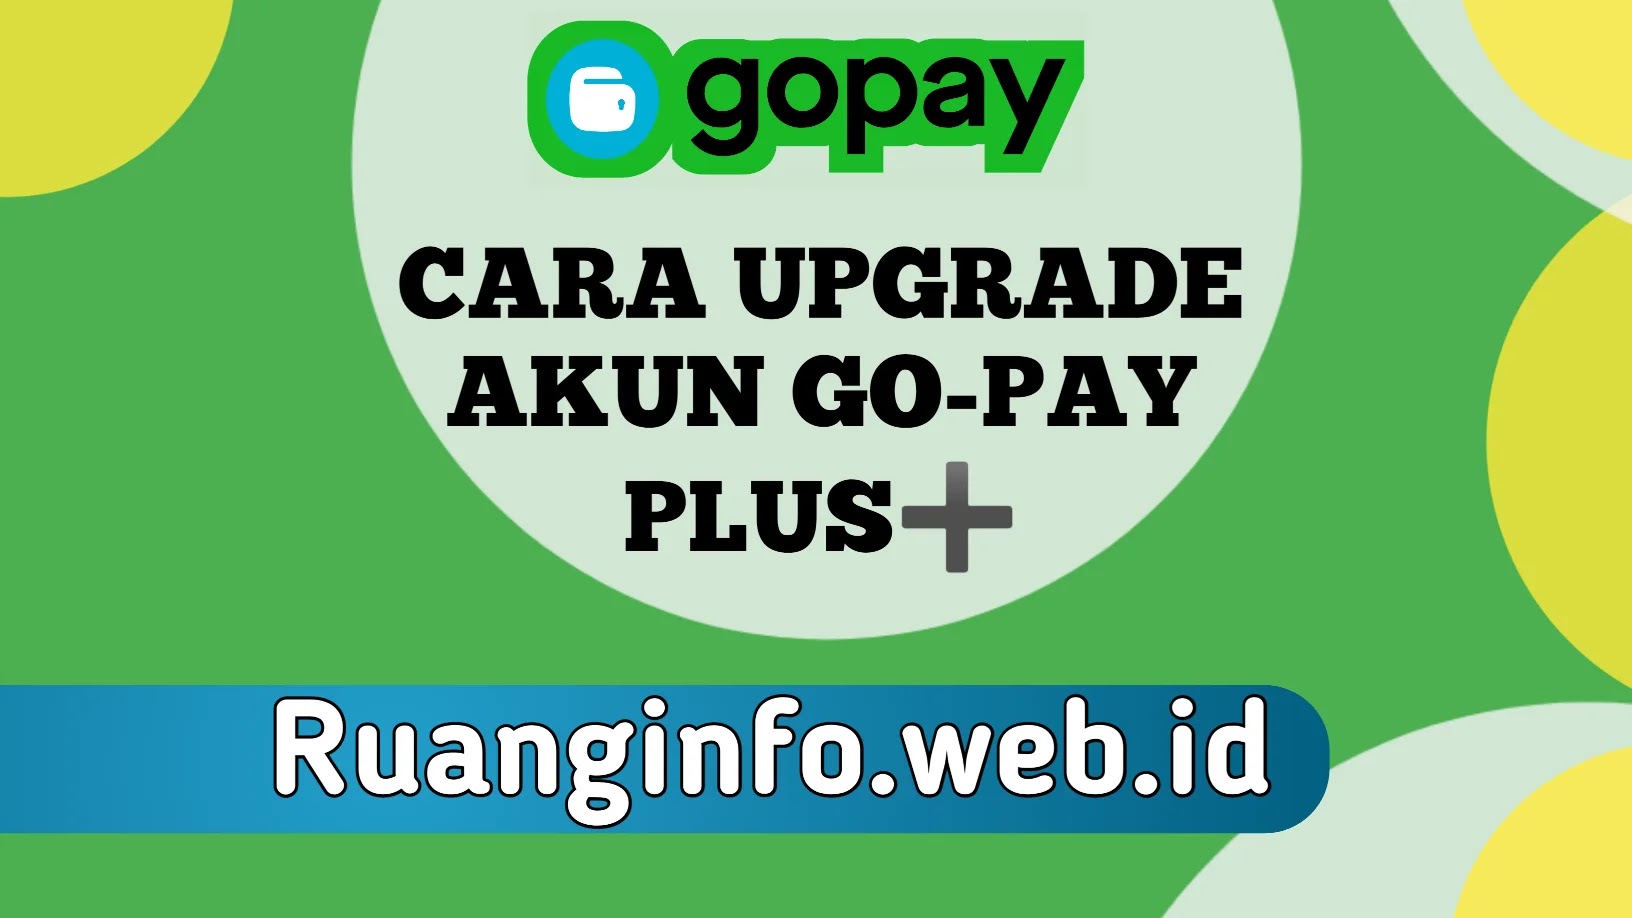 Mau upgrade akun GO-PAY menjadi GO-PAY Plus berikut ini adalah panduan lengkap upgrade GO-PAY plus dengan mudah &cepat